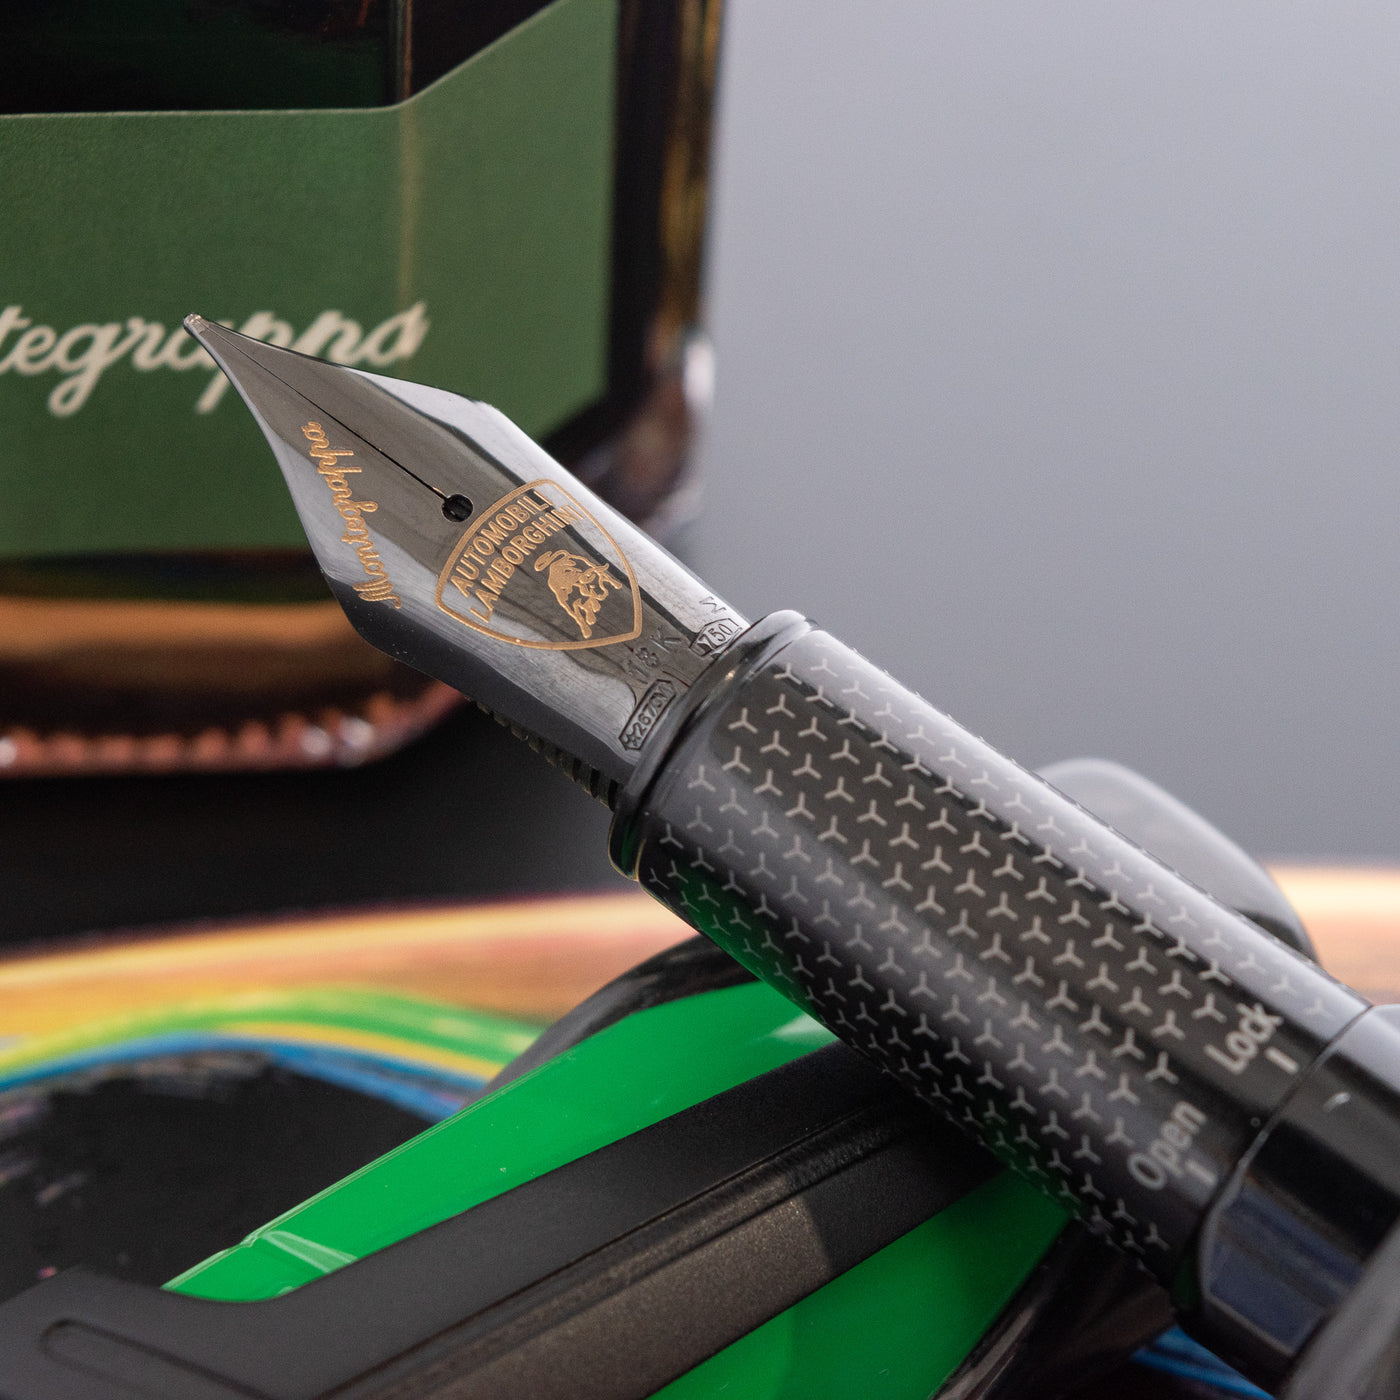 Montegrappa Automobili Lamborghini Viper Verde Green Fountain Pen 18k gold nib